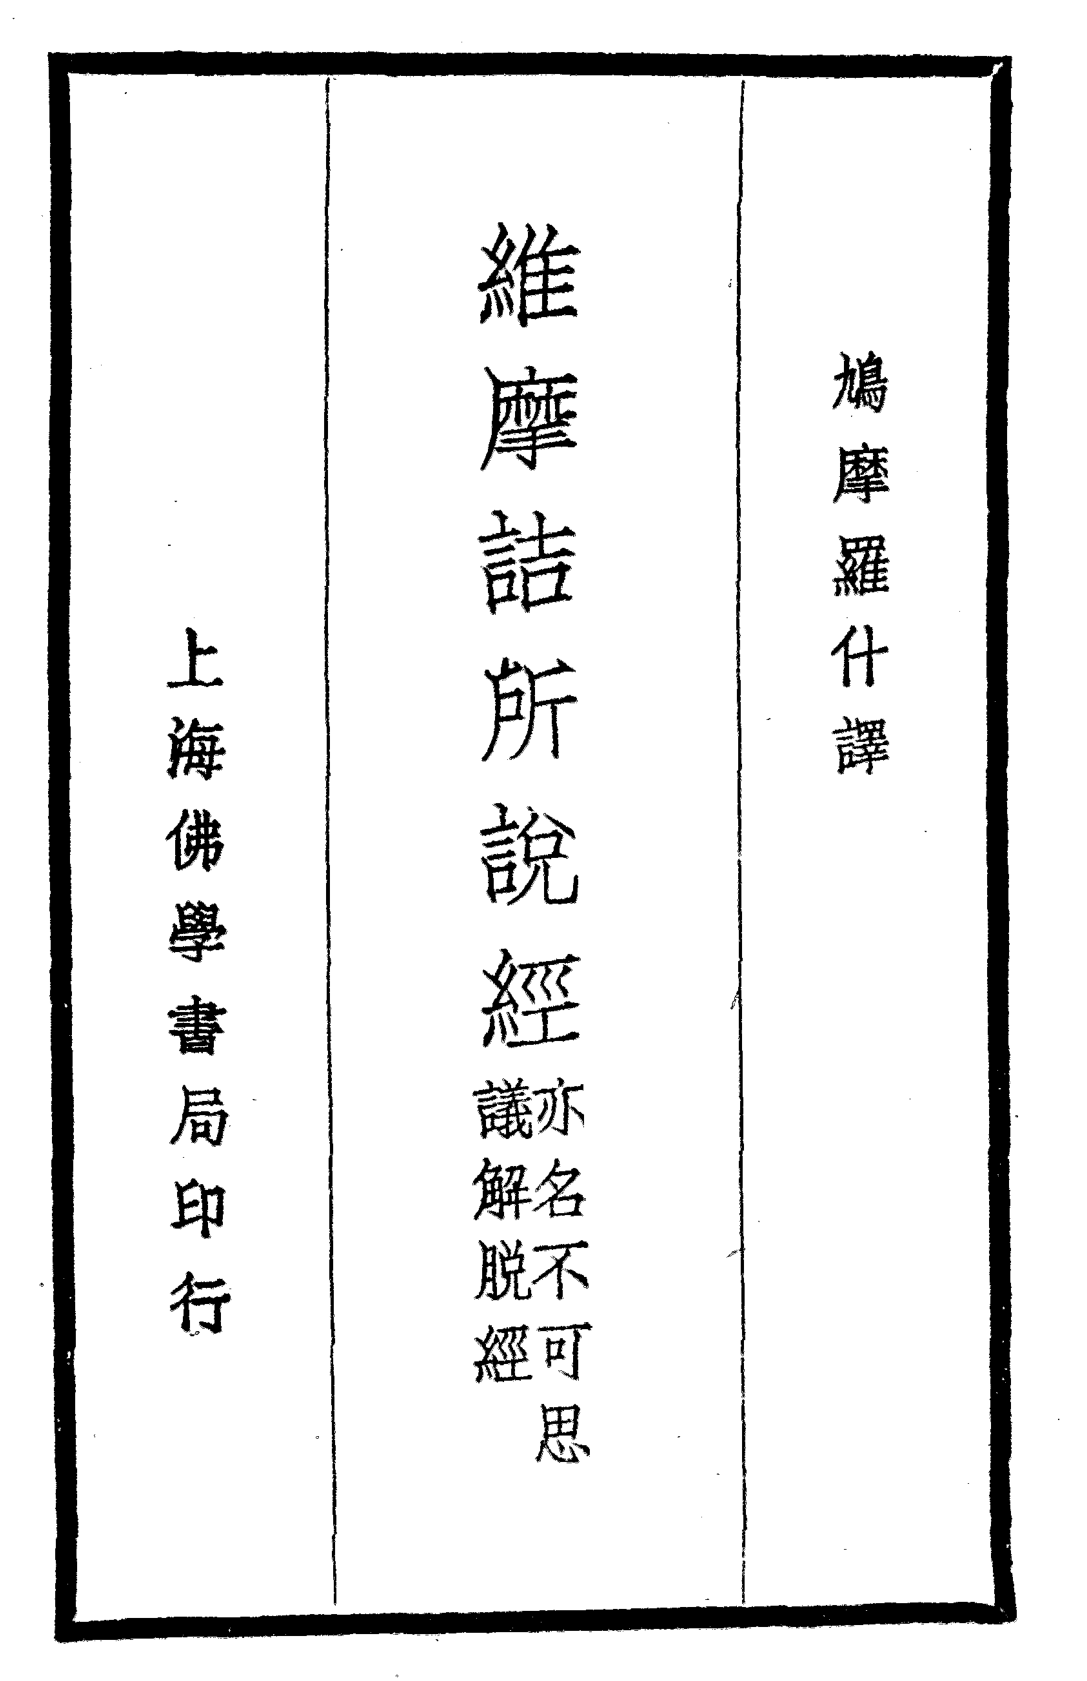 File:Weimojie suoshuo jing 1935.png